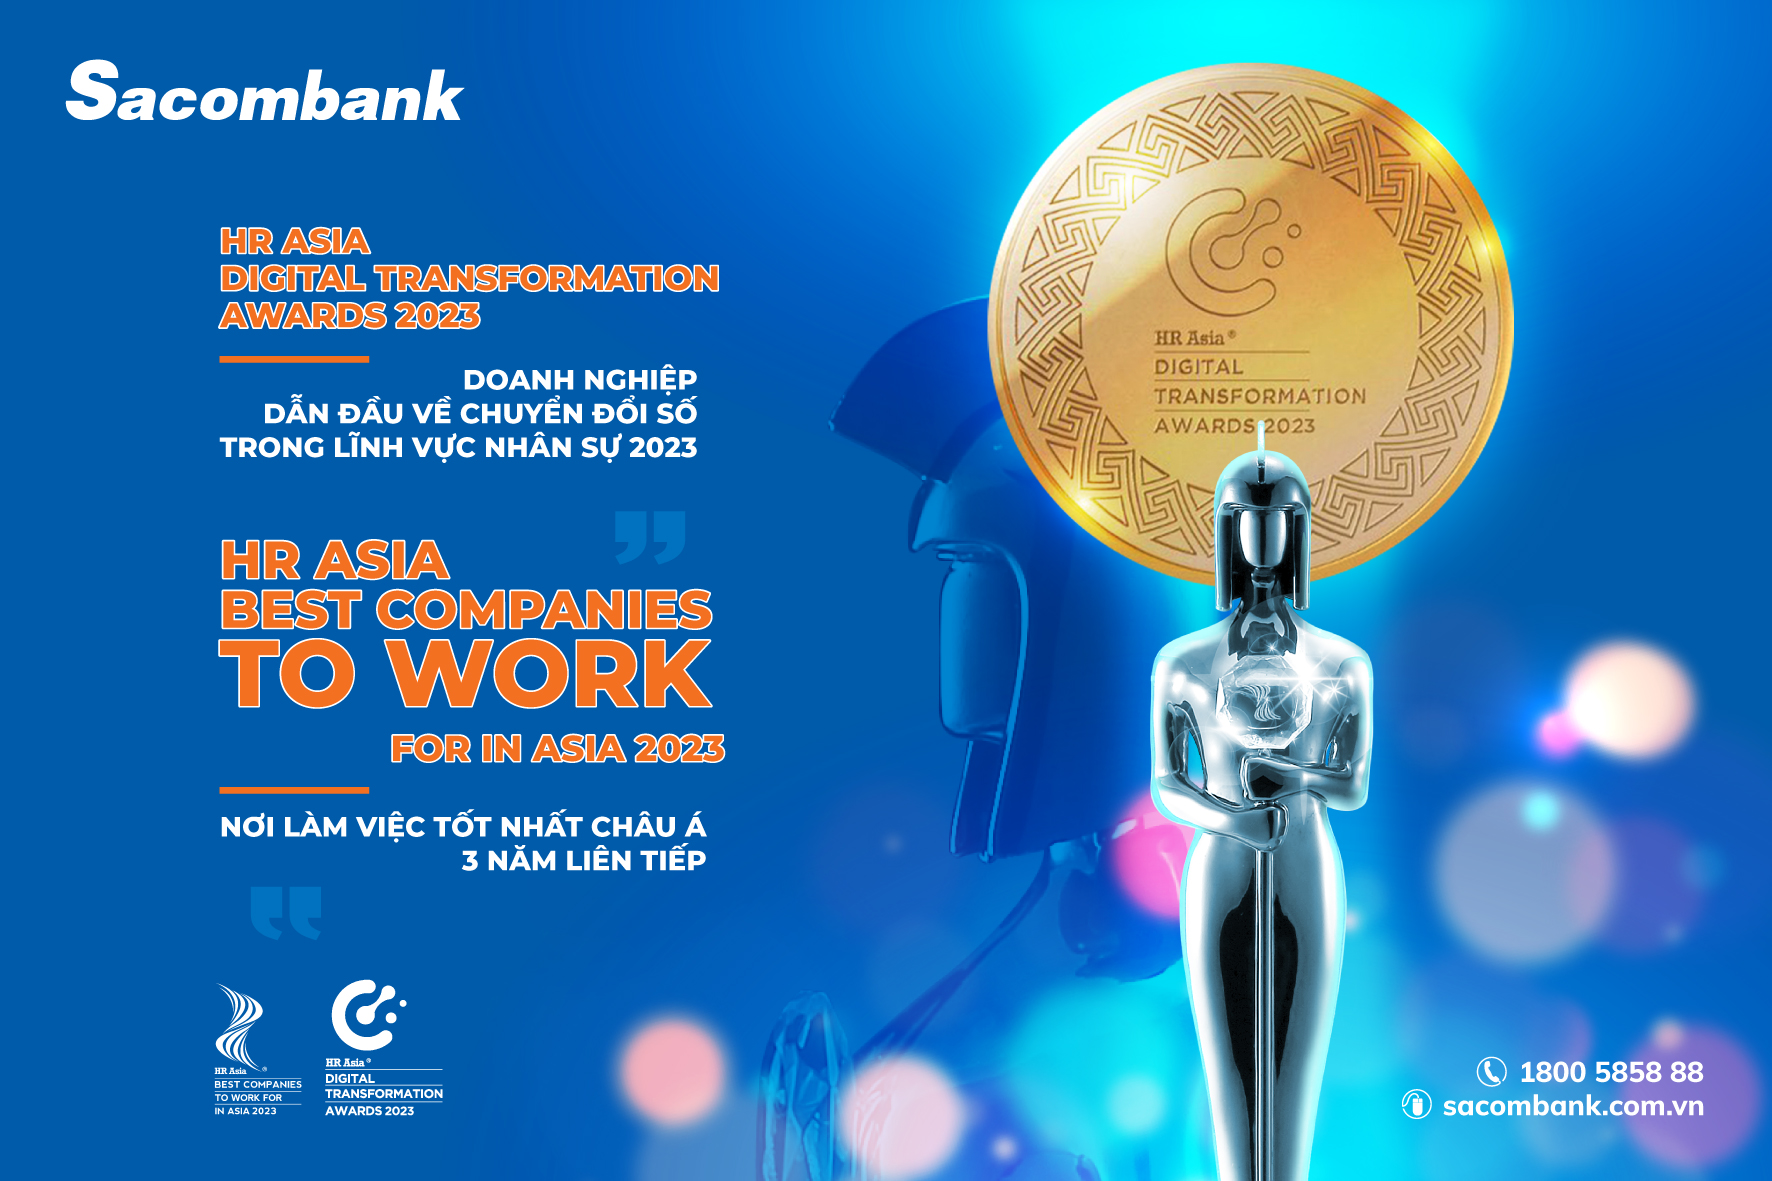 Sacombank nhận giải thưởng dẫn đầu về chuyển đổi số trong lĩnh vực nhân sự